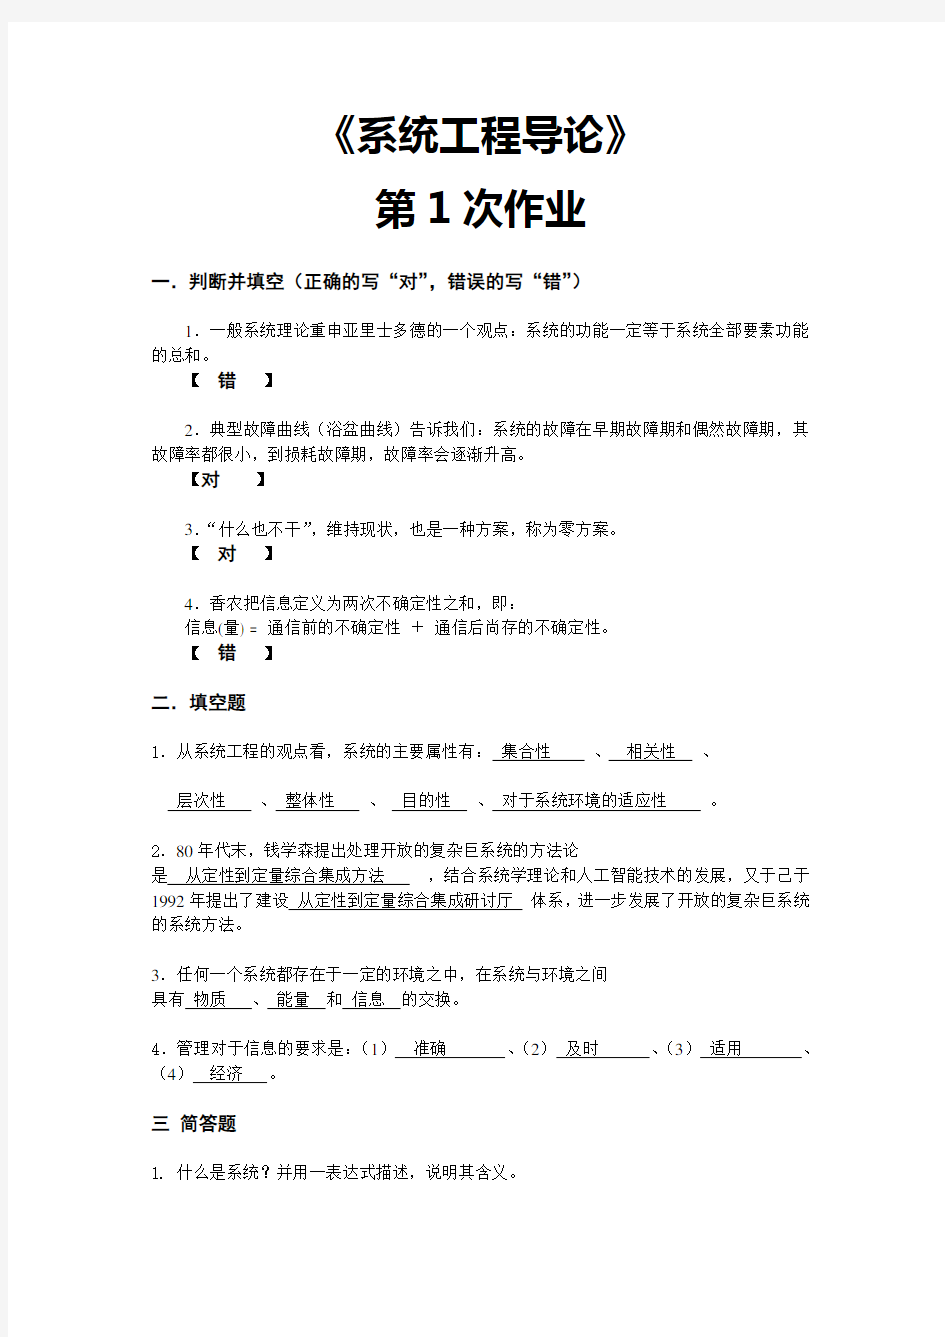 系统工程导论作业12019华南理工网络学院